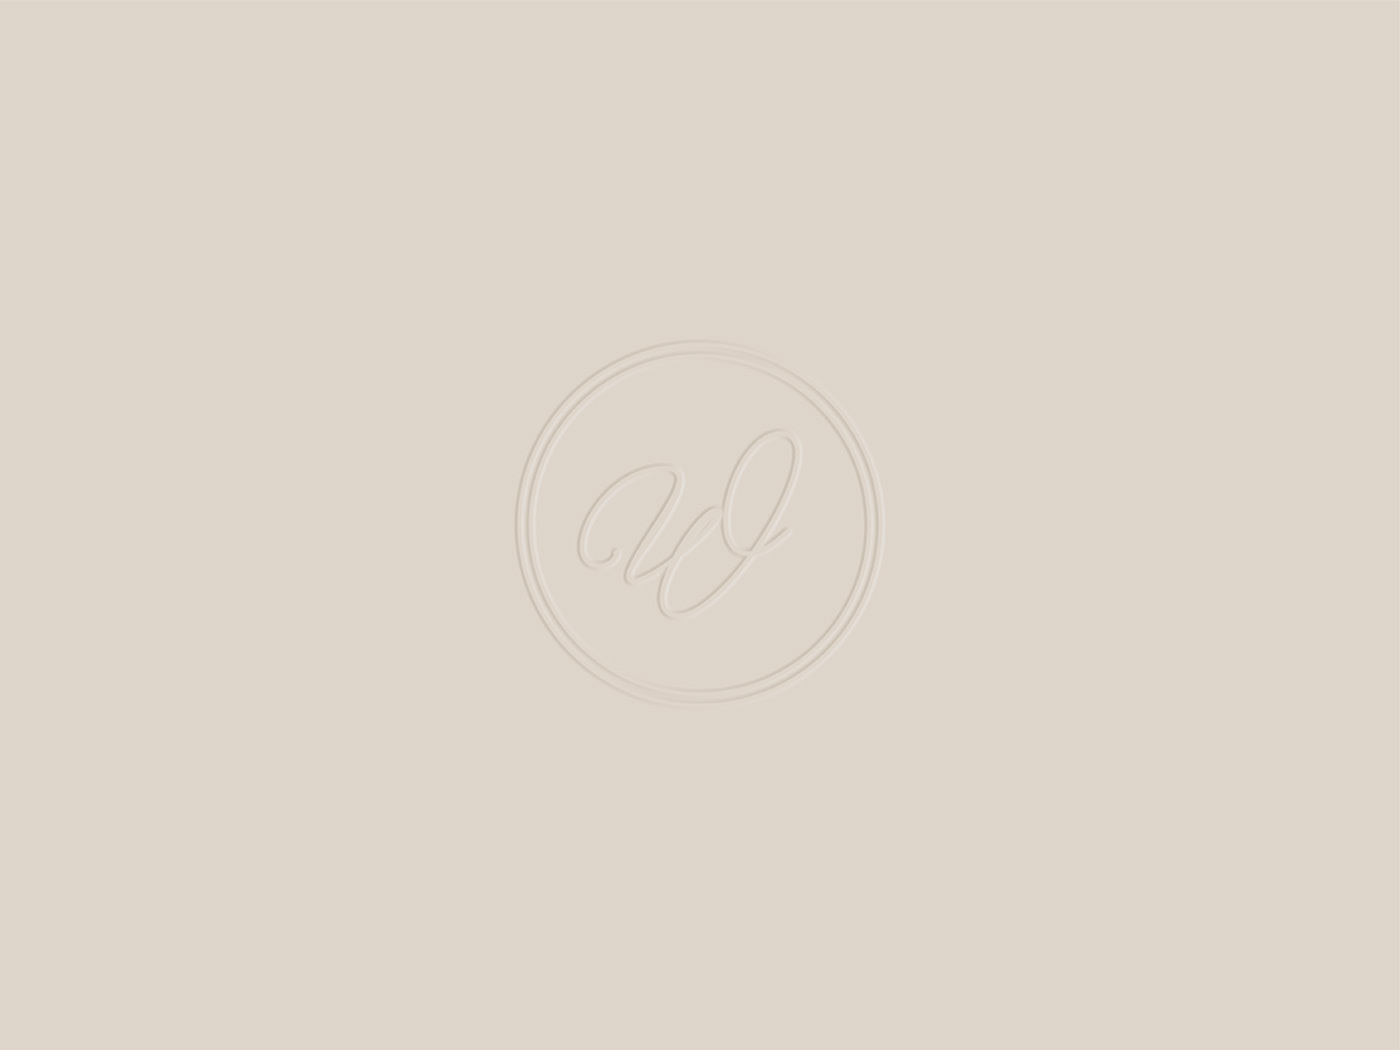 jewelry Jewellery brand identity Packaging logo логотип фирменный стиль украшения айдентика упаковка